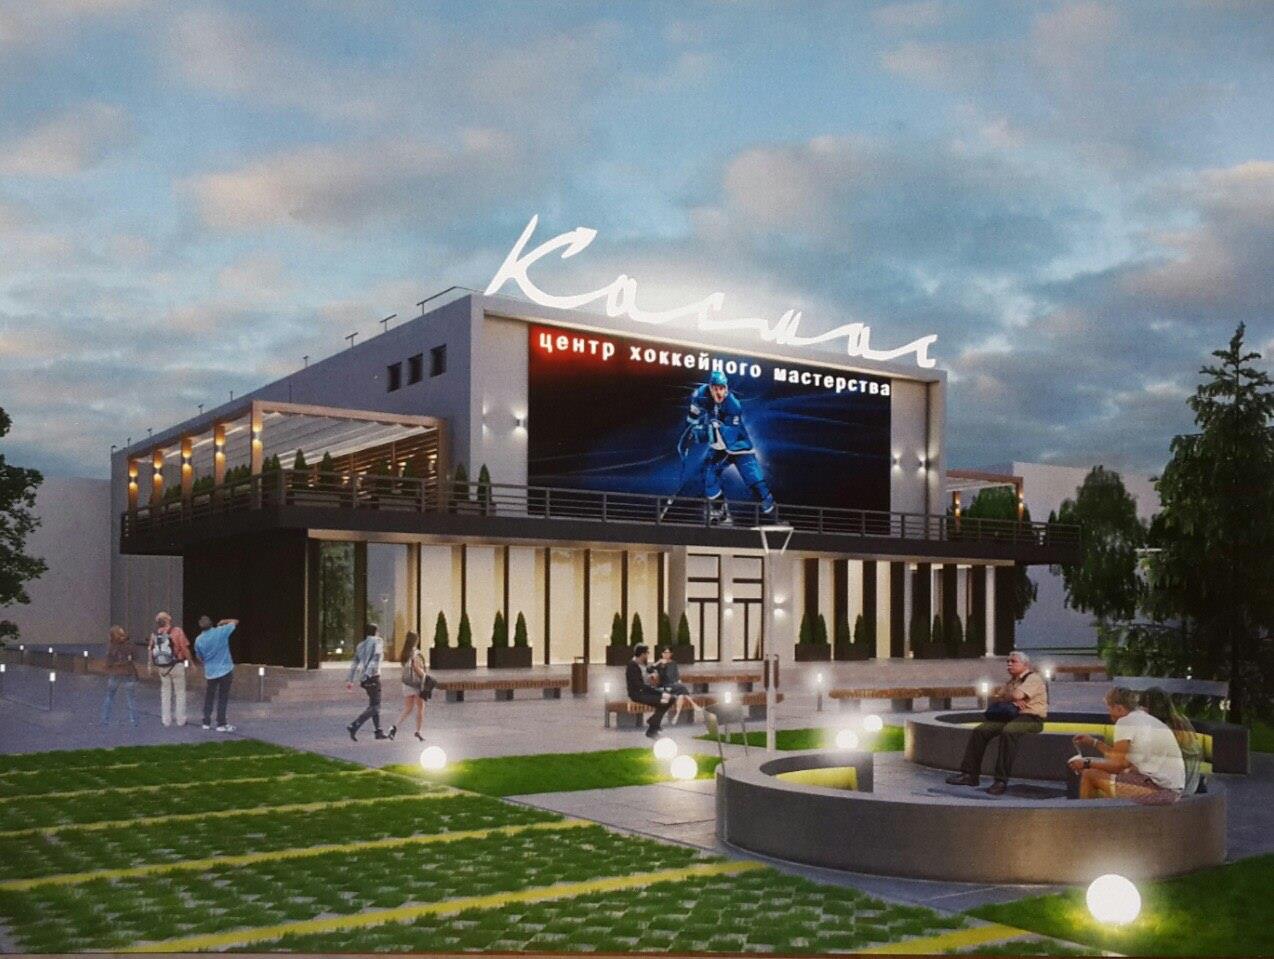 Здание кинотеатра «Космос» реконструируют и сделают в нем «Центр хоккейного мастерства»